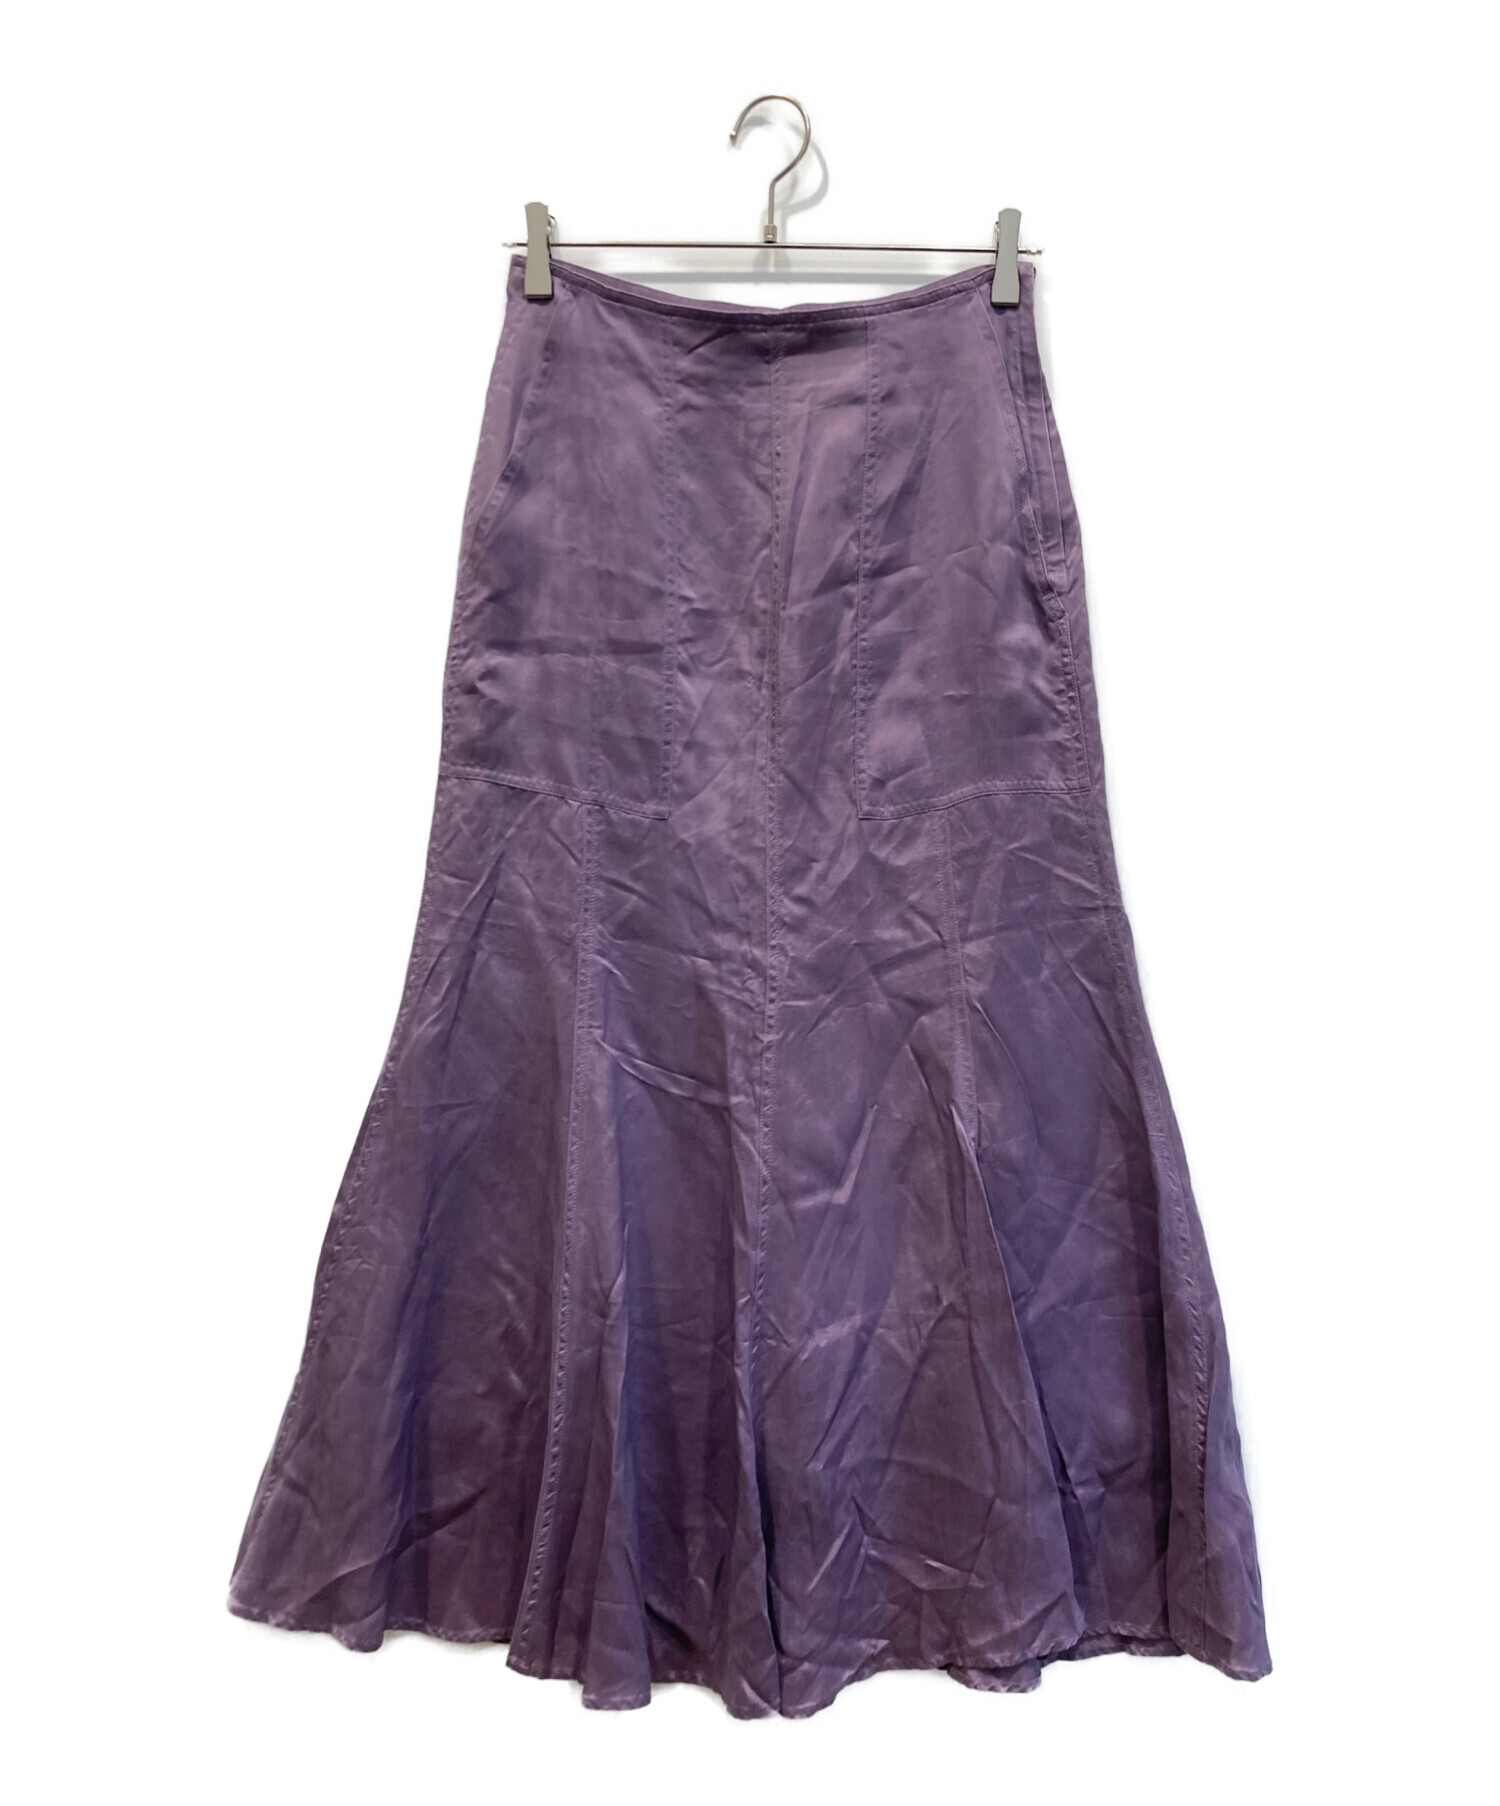 Noble (ノーブル) ウォッシュドキュプラマーメイドスカート パープル サイズ:38